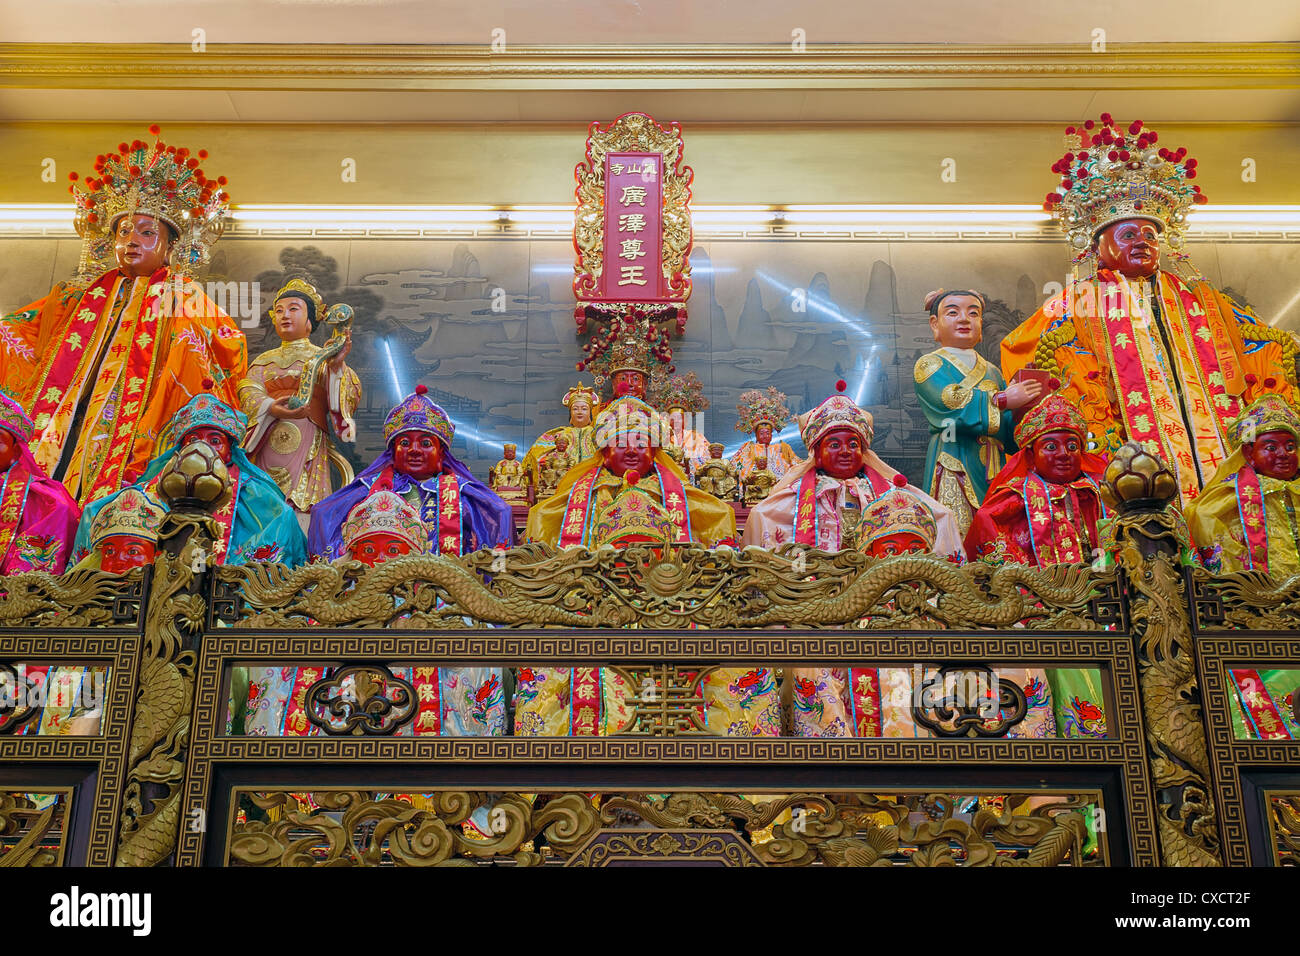 Chinesischen taoistischen Tempel Altar mit Götter, Göttinnen und Götter Statuen und Dragon Schnitzereien Stockfoto